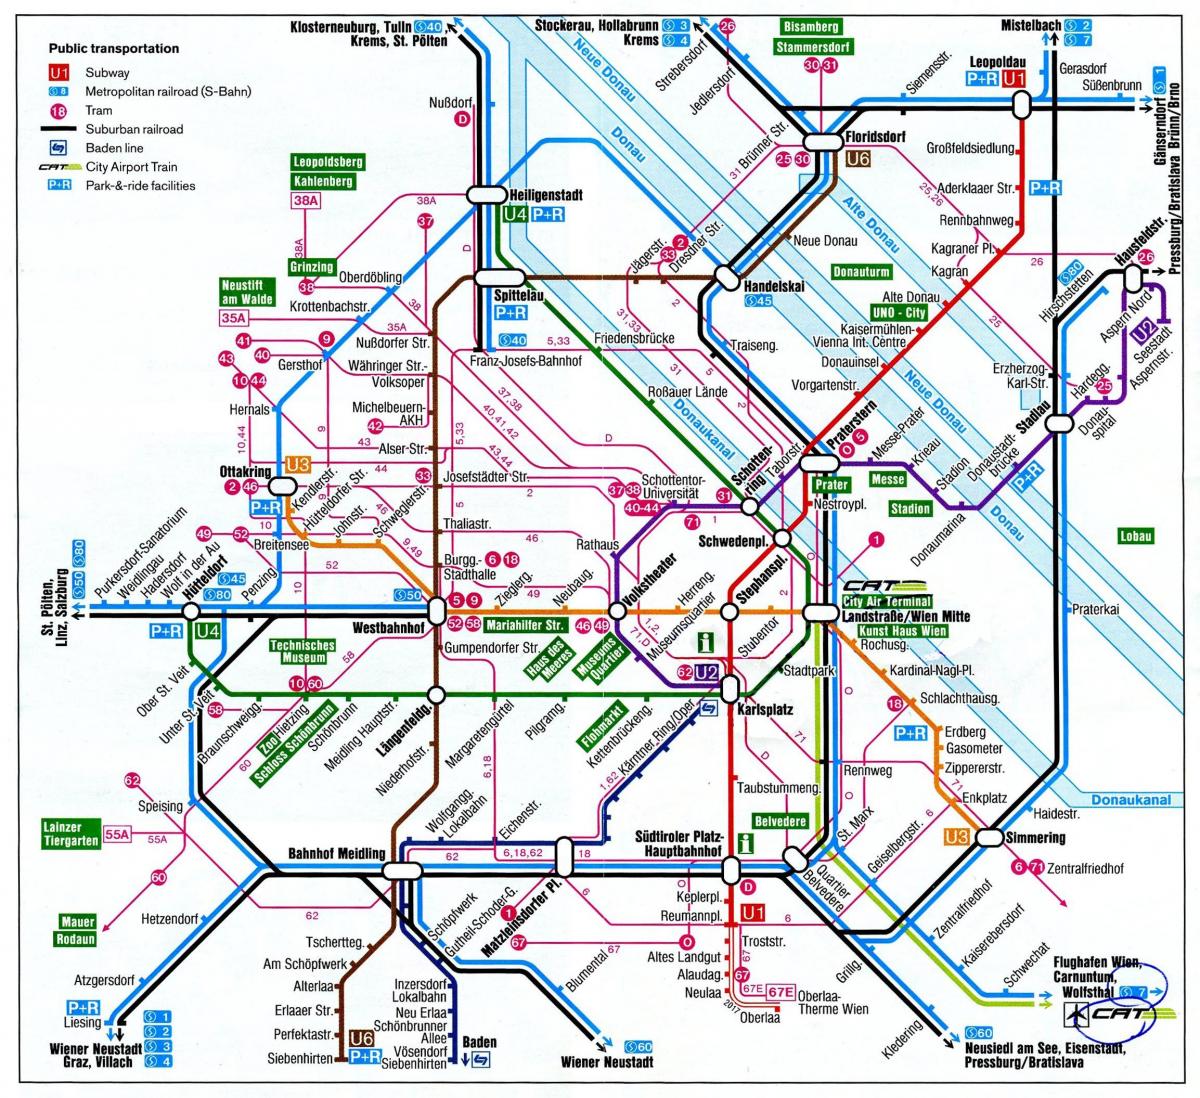 Mapa ng Vienna Austria sa tren